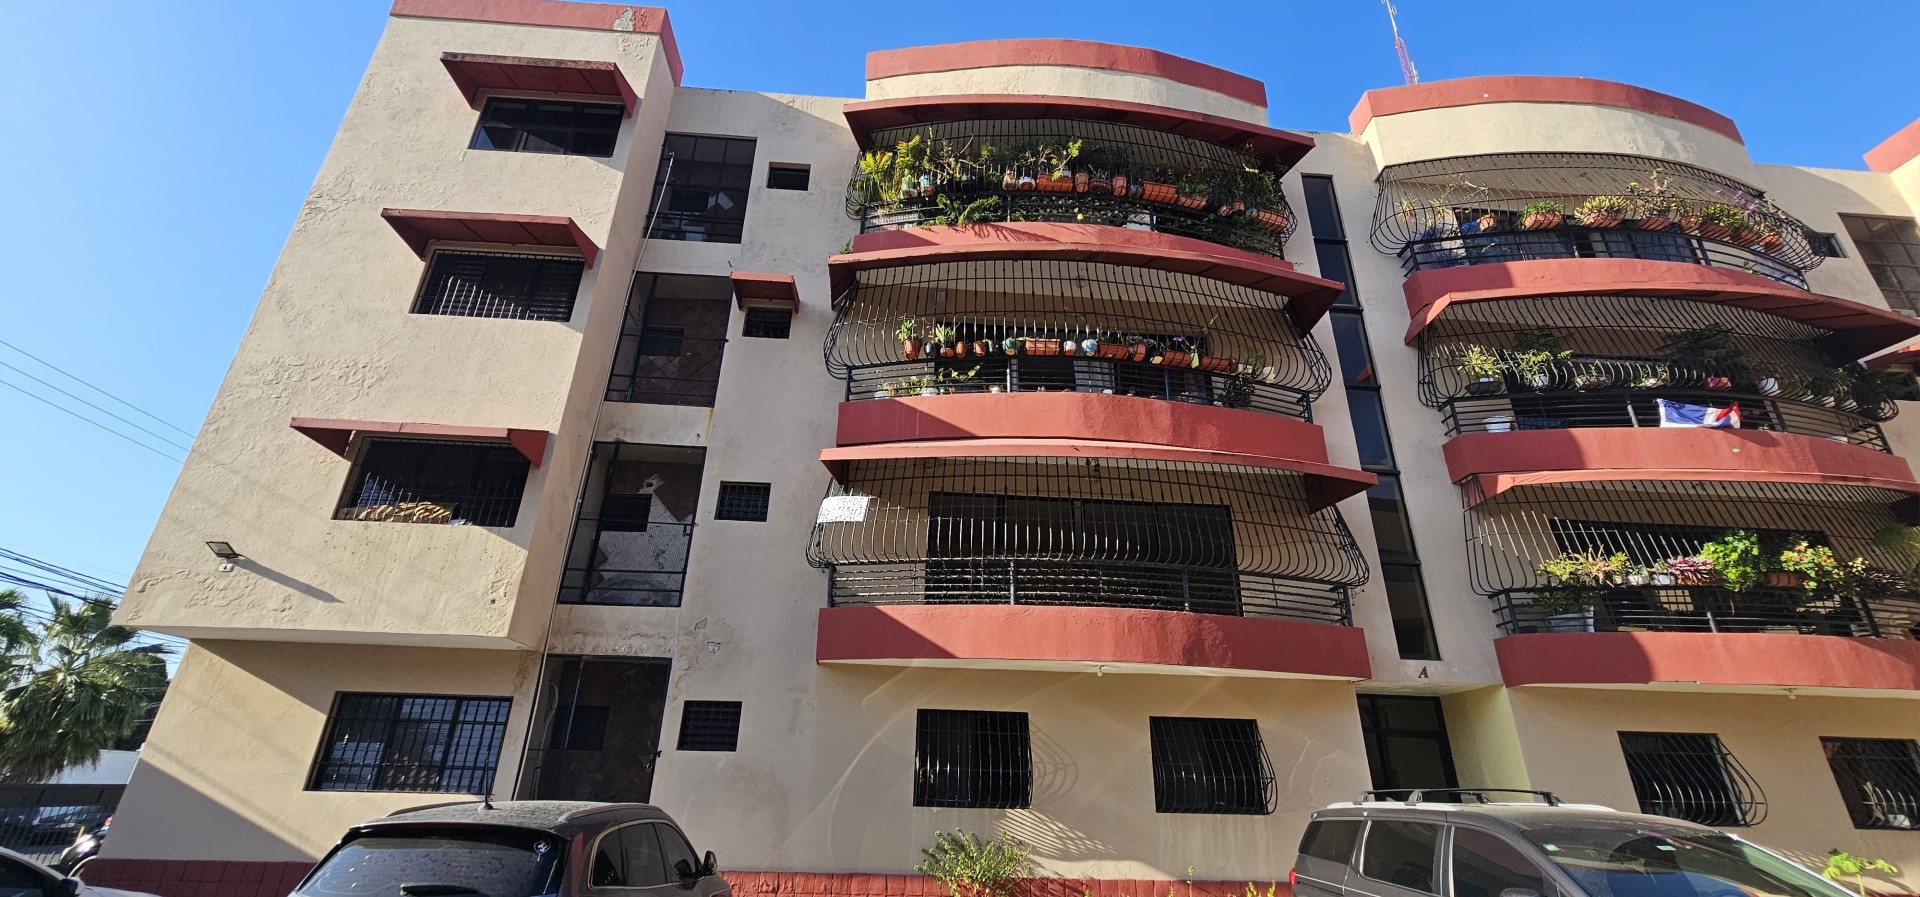 apartamentos - Vendo apartamento clásico en Los Prados